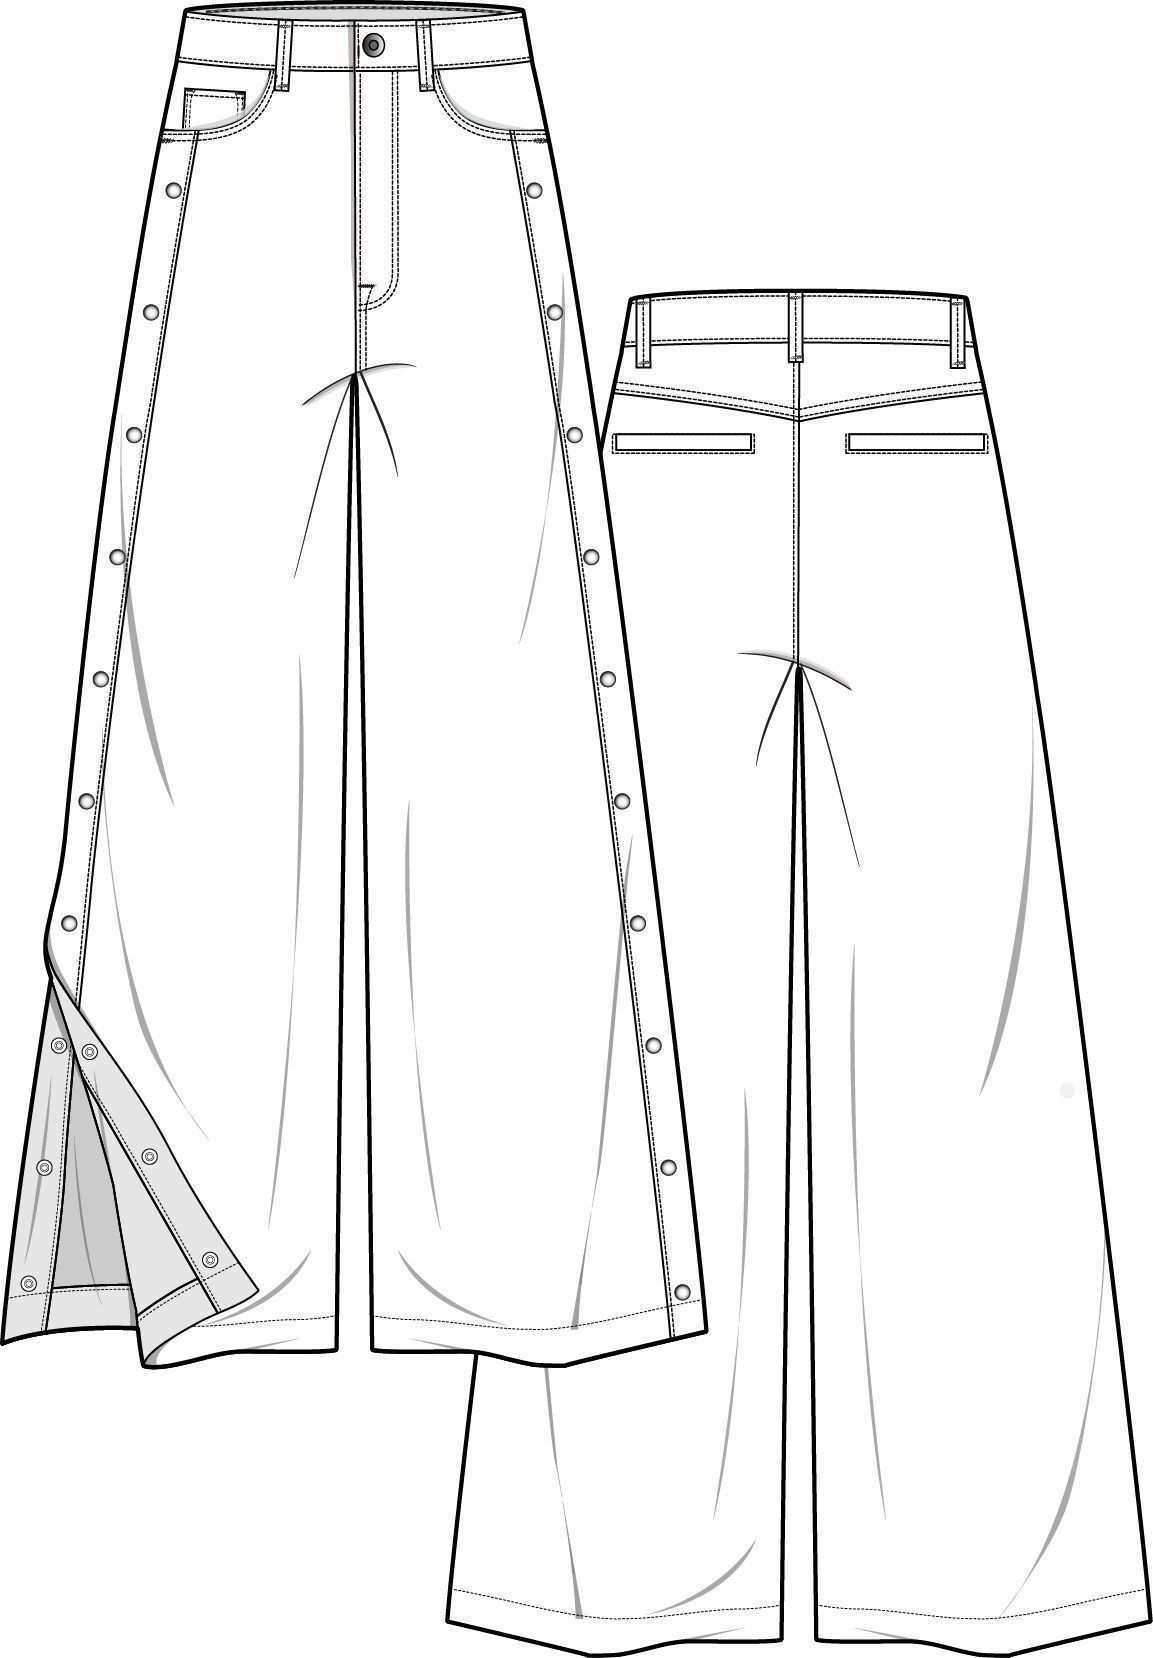 Pants Fashion Flat Technical Drawing Template Pants Fashion Flat Technical Drawing Template Pants Fashio In 2020 Hosen Mode Technische Zeichnung Kleidung Entwerfen